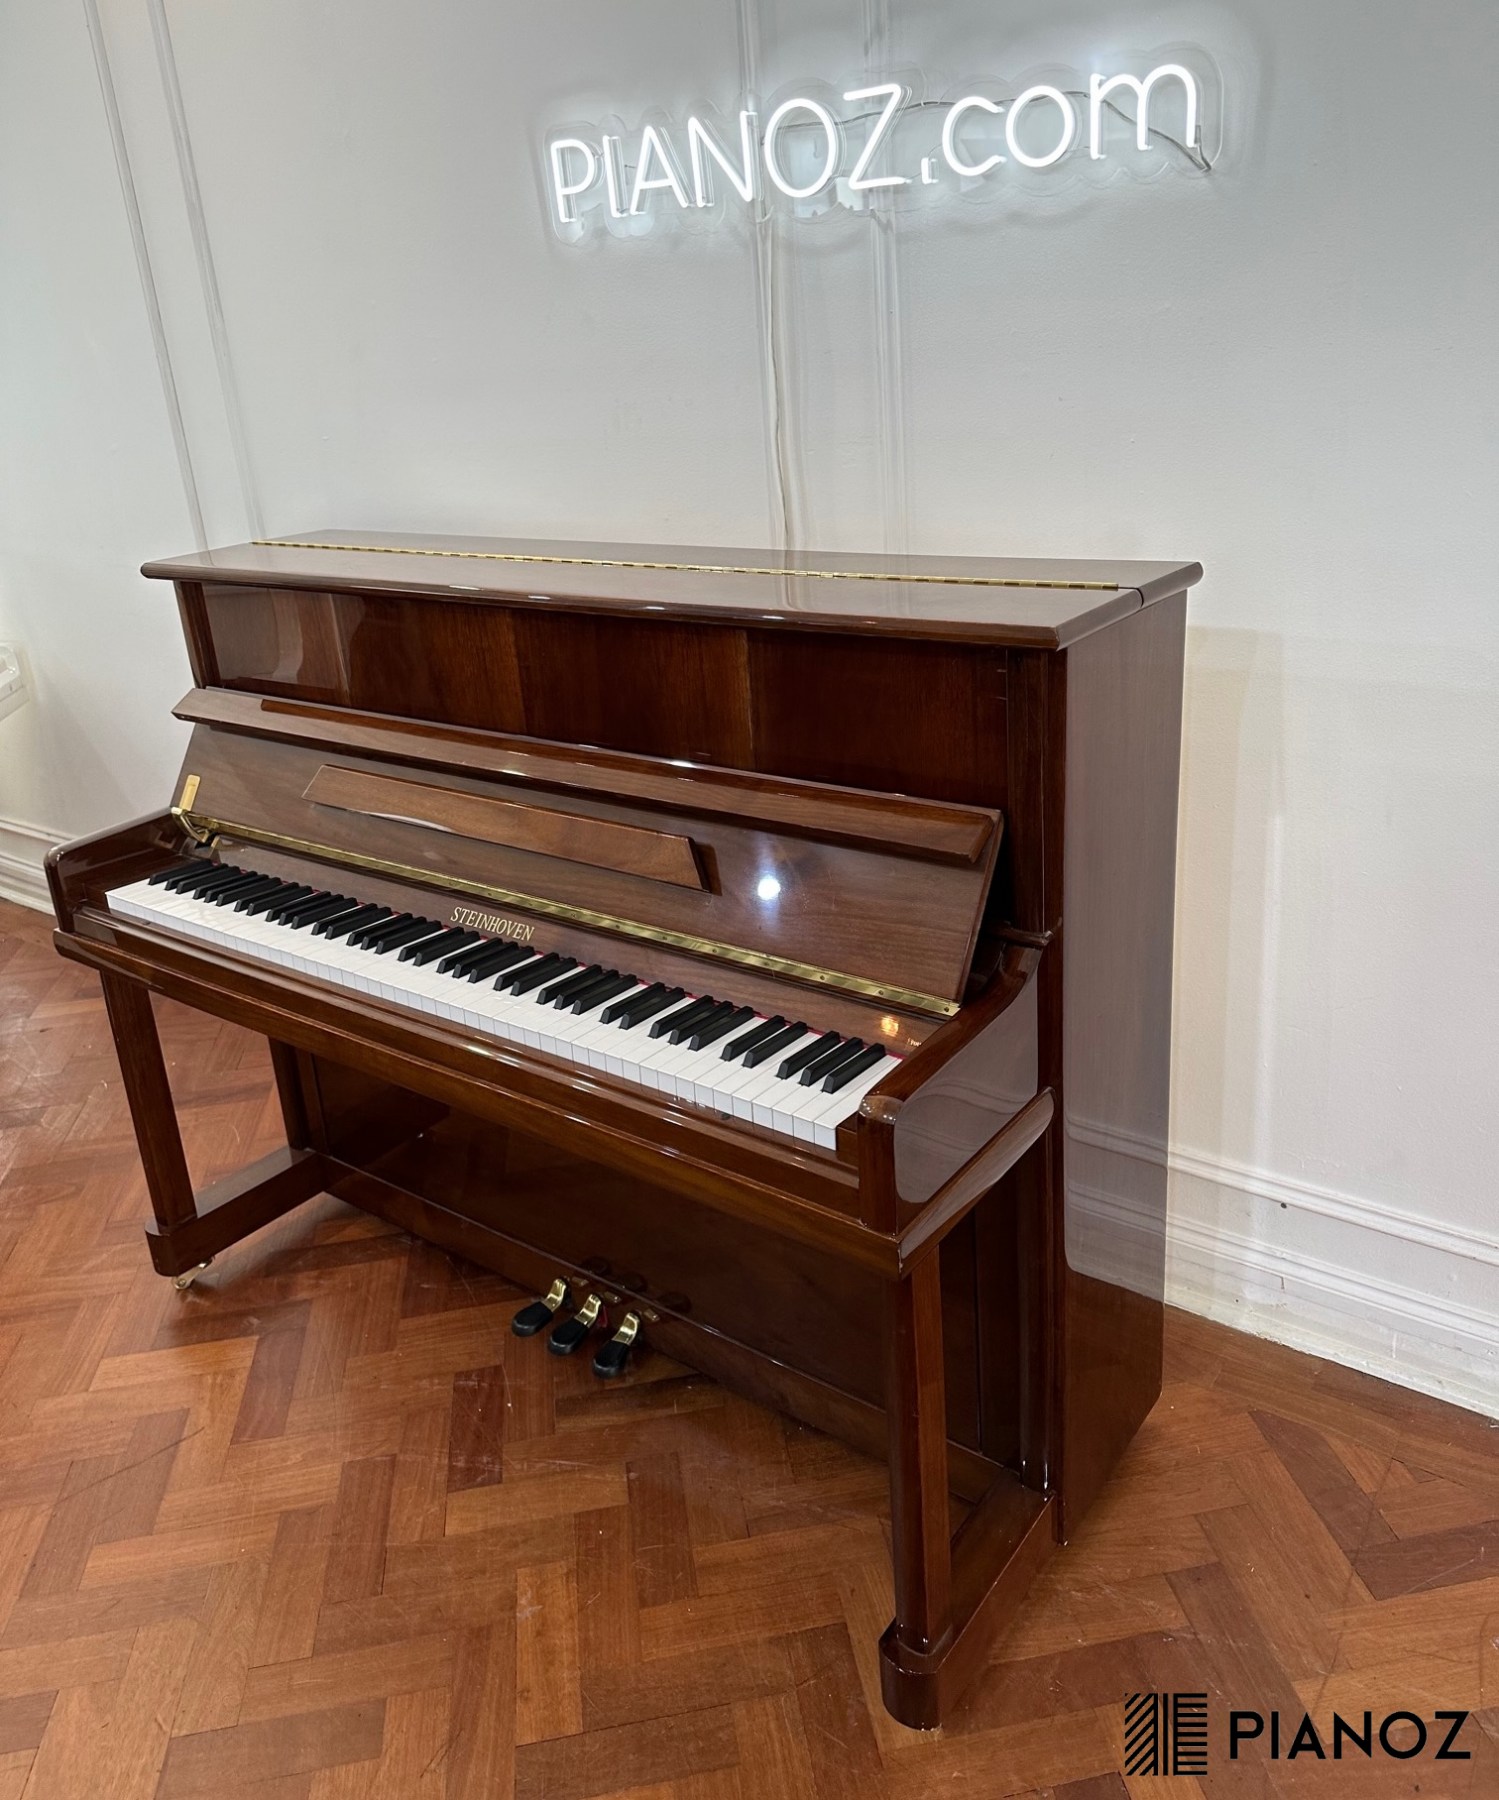 Steinhoven SU112 Upright Piano piano for sale in UK